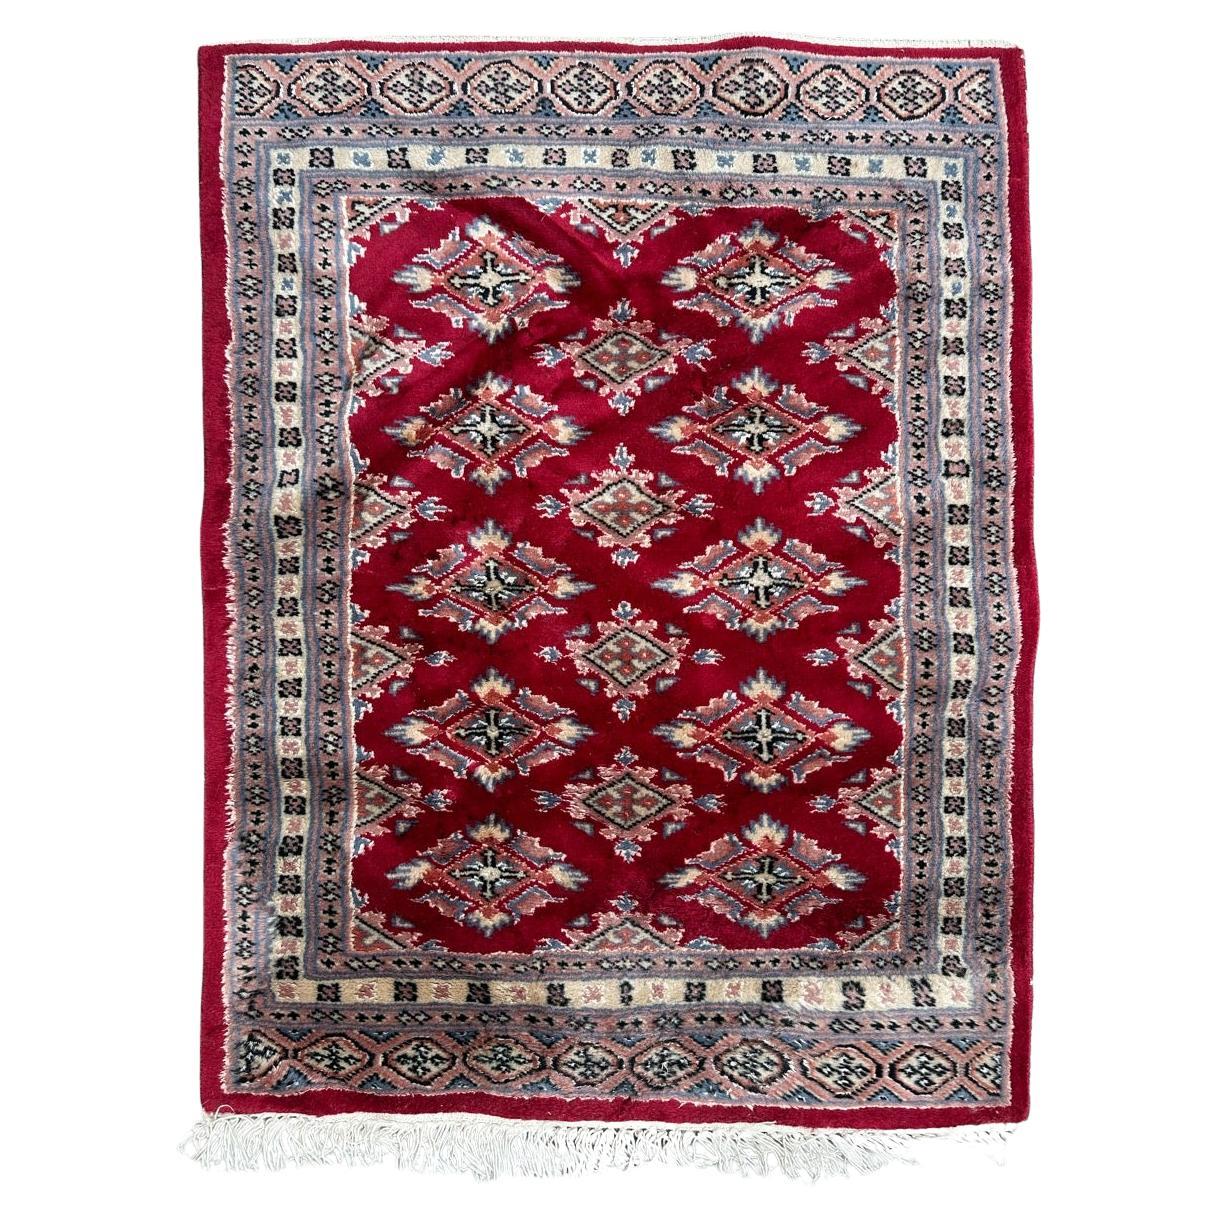 Petit tapis pakistanais vintage